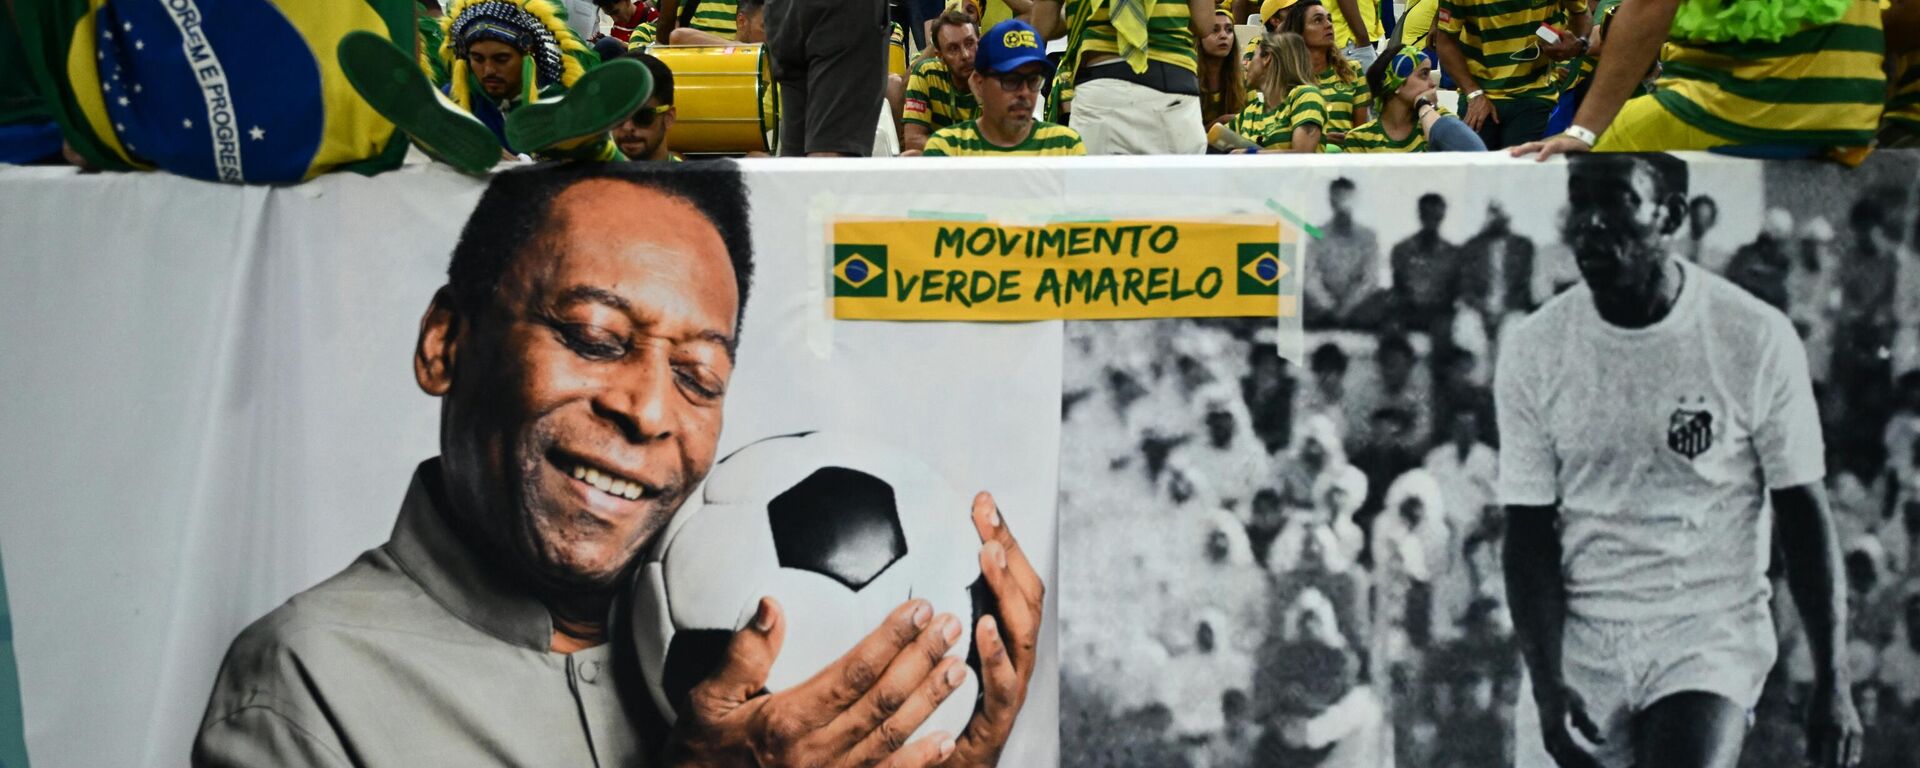 Carteles de Pelé desplegados por la afición brasileña en el Mundial de Catar 2022 - Sputnik Mundo, 1920, 29.12.2022